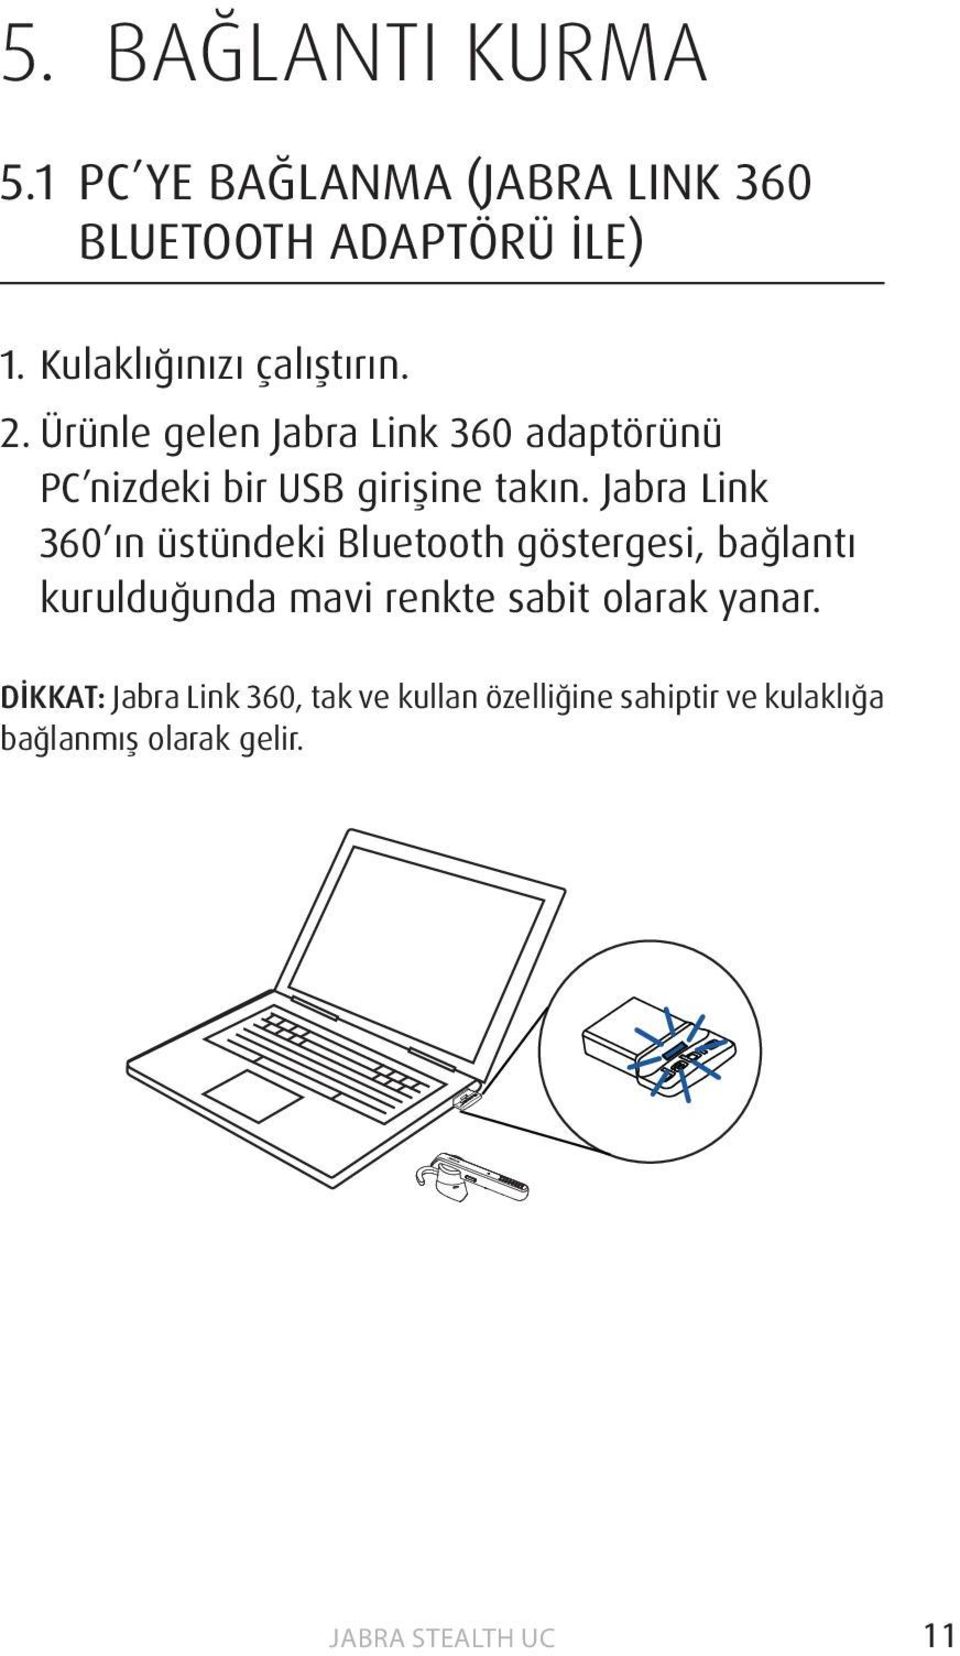 Ürünle gelen Jabra Link 360 adaptörünü PC nizdeki bir USB girişine takın.